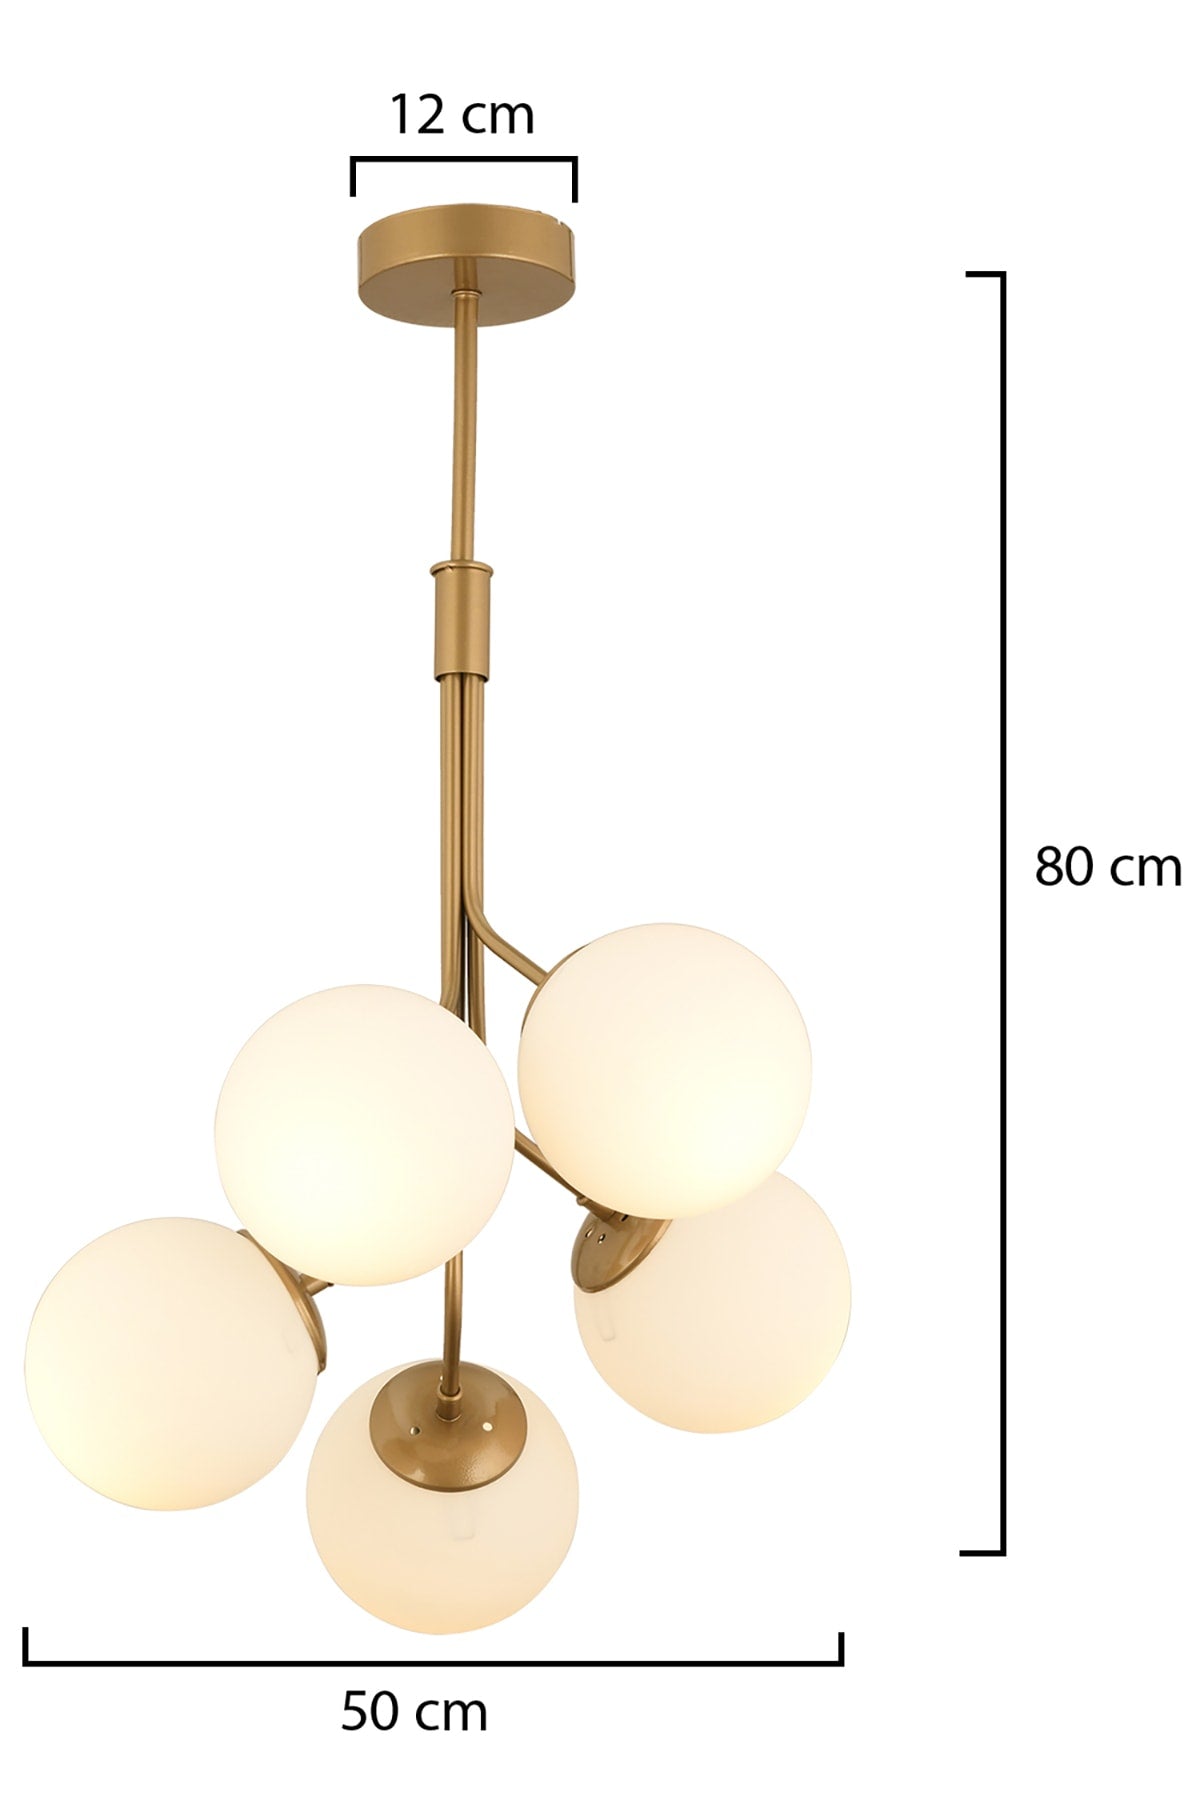 Artel 5-Piece Antique Modern Pendant Lamp, Kitchen Bedroom Living Room Chandelier